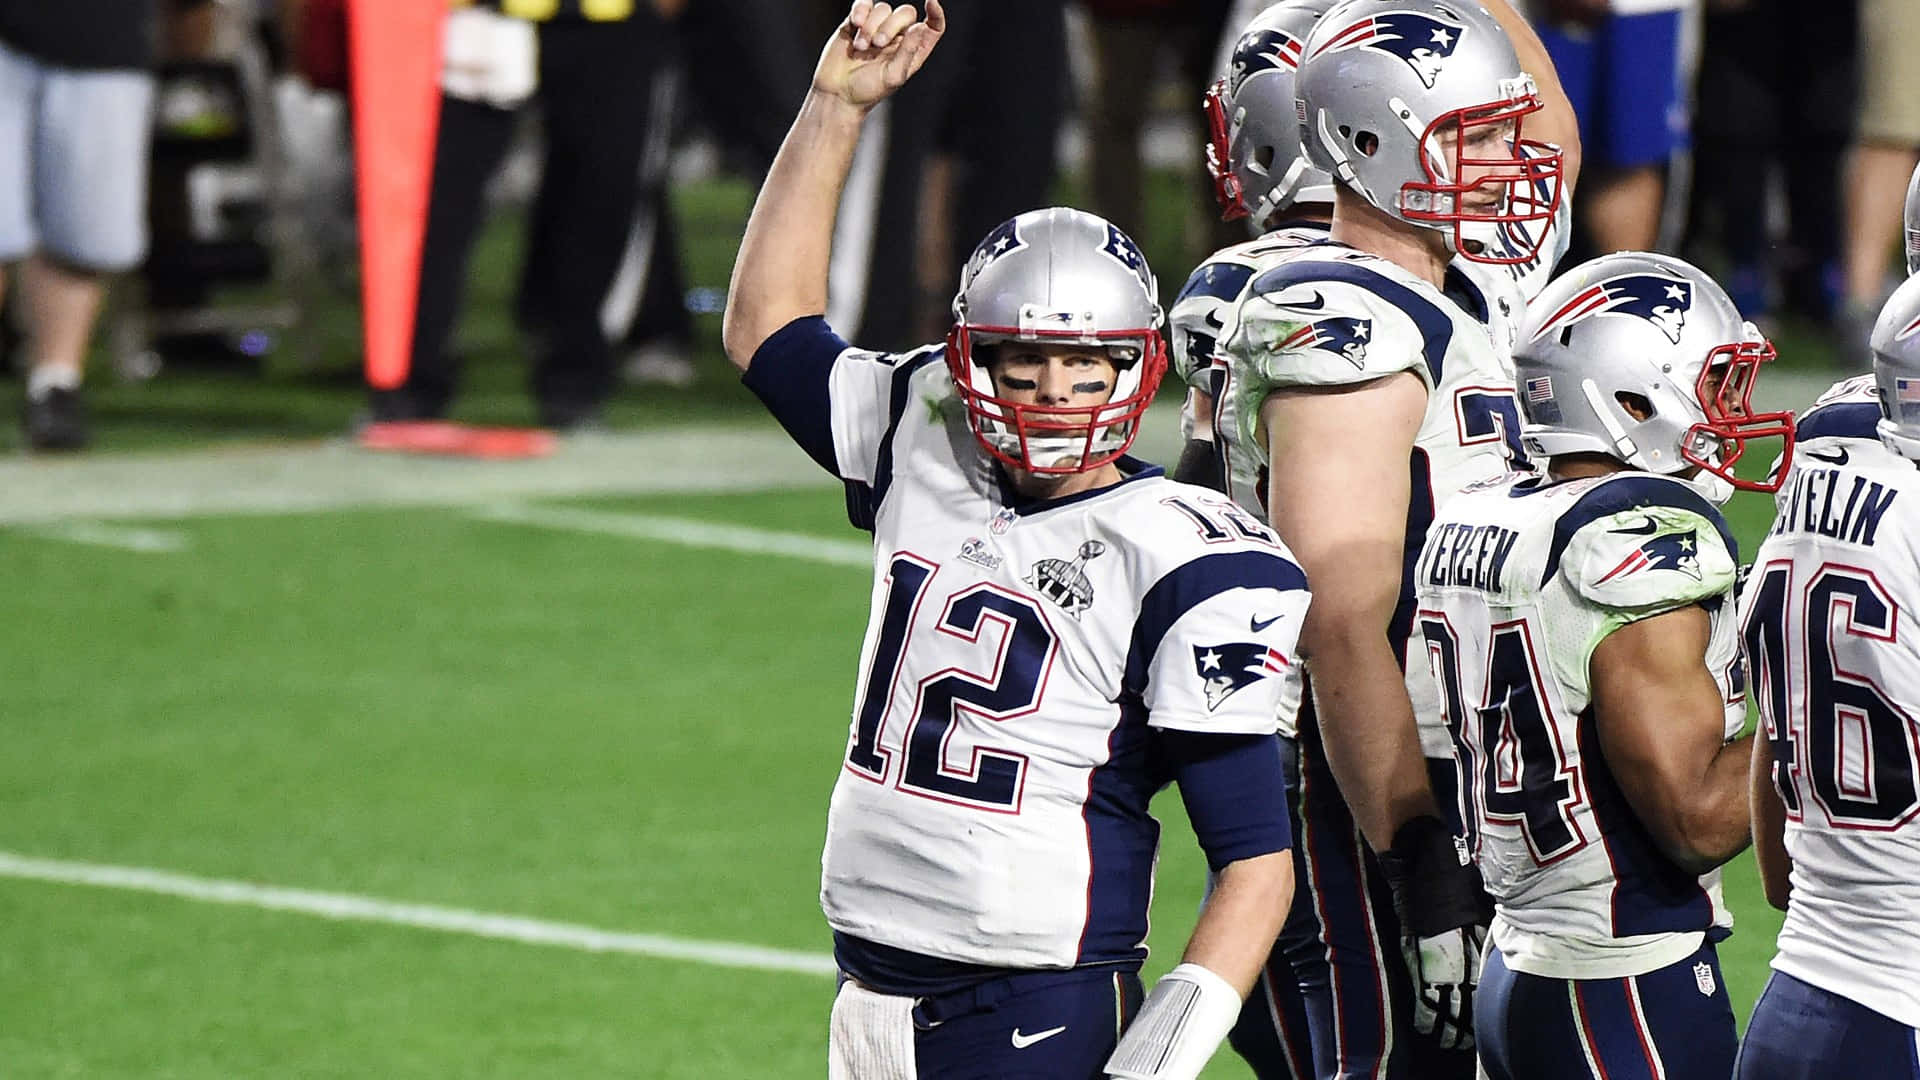 Feiernsie Den Super Bowl Mit Dem New England Patriots-desktop-hintergrund. Wallpaper